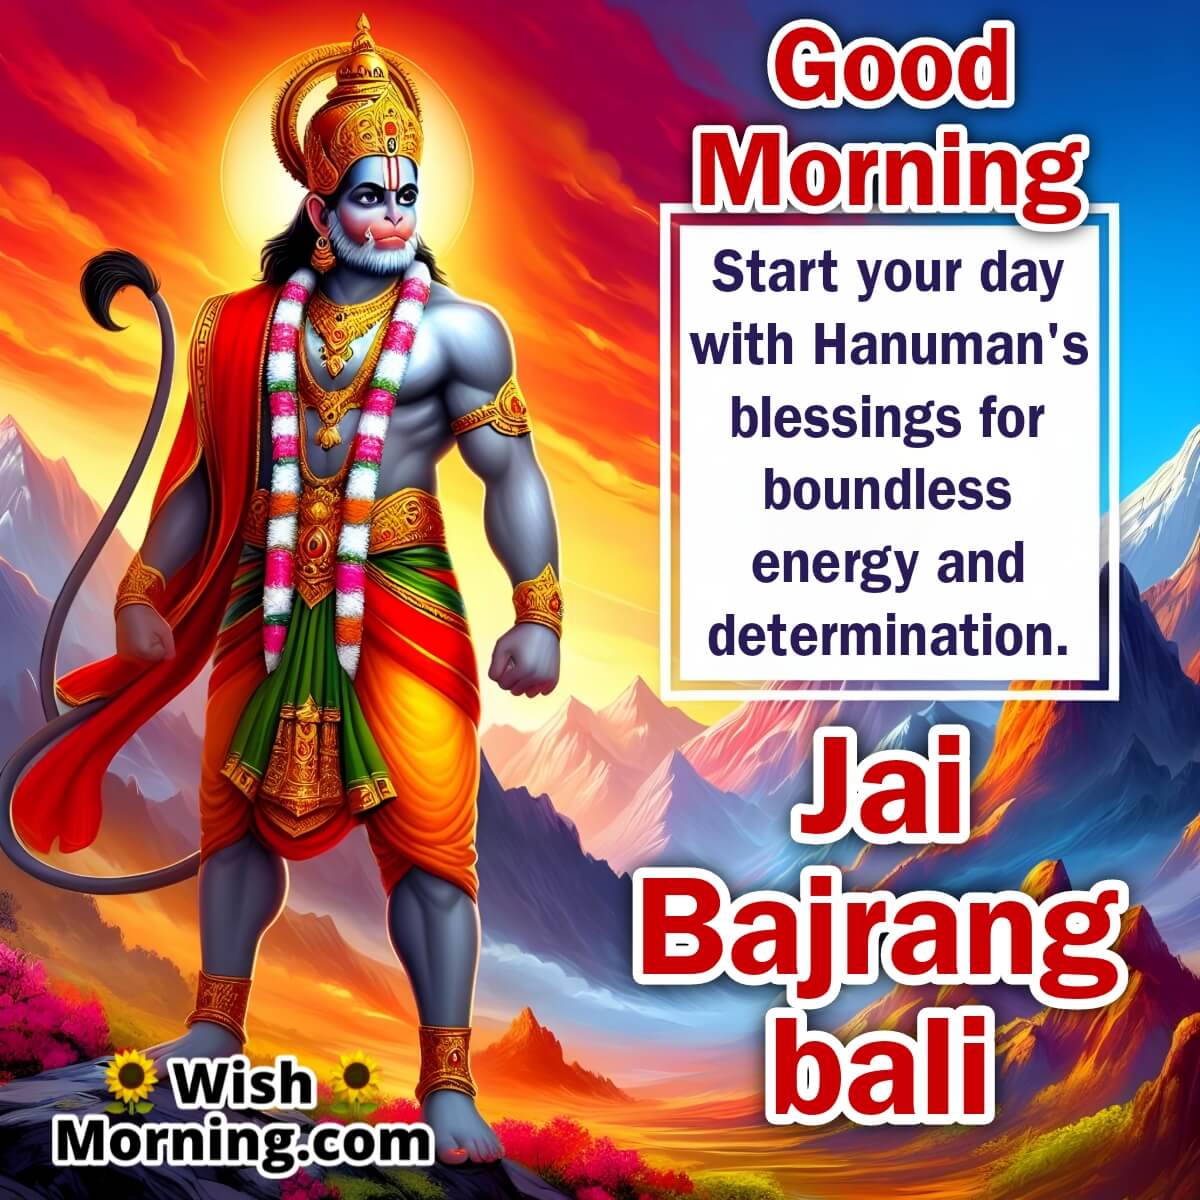 Hanuman's Sunrise Blessings